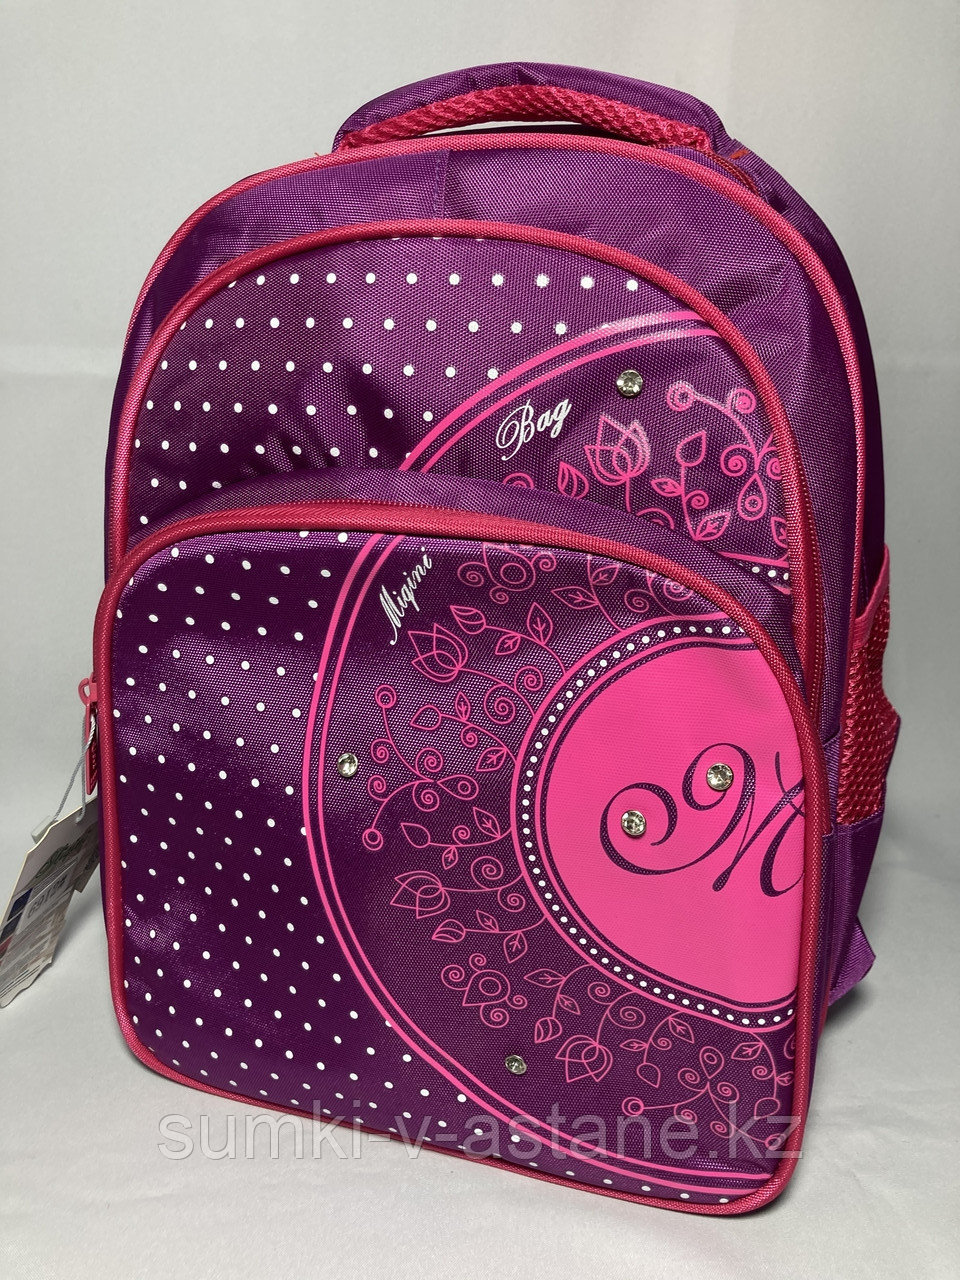 Школьный рюкзак "Migini", для девочек в 1-3-й класс. Высота 36 см, ширина 27 см. глубина 17 см.